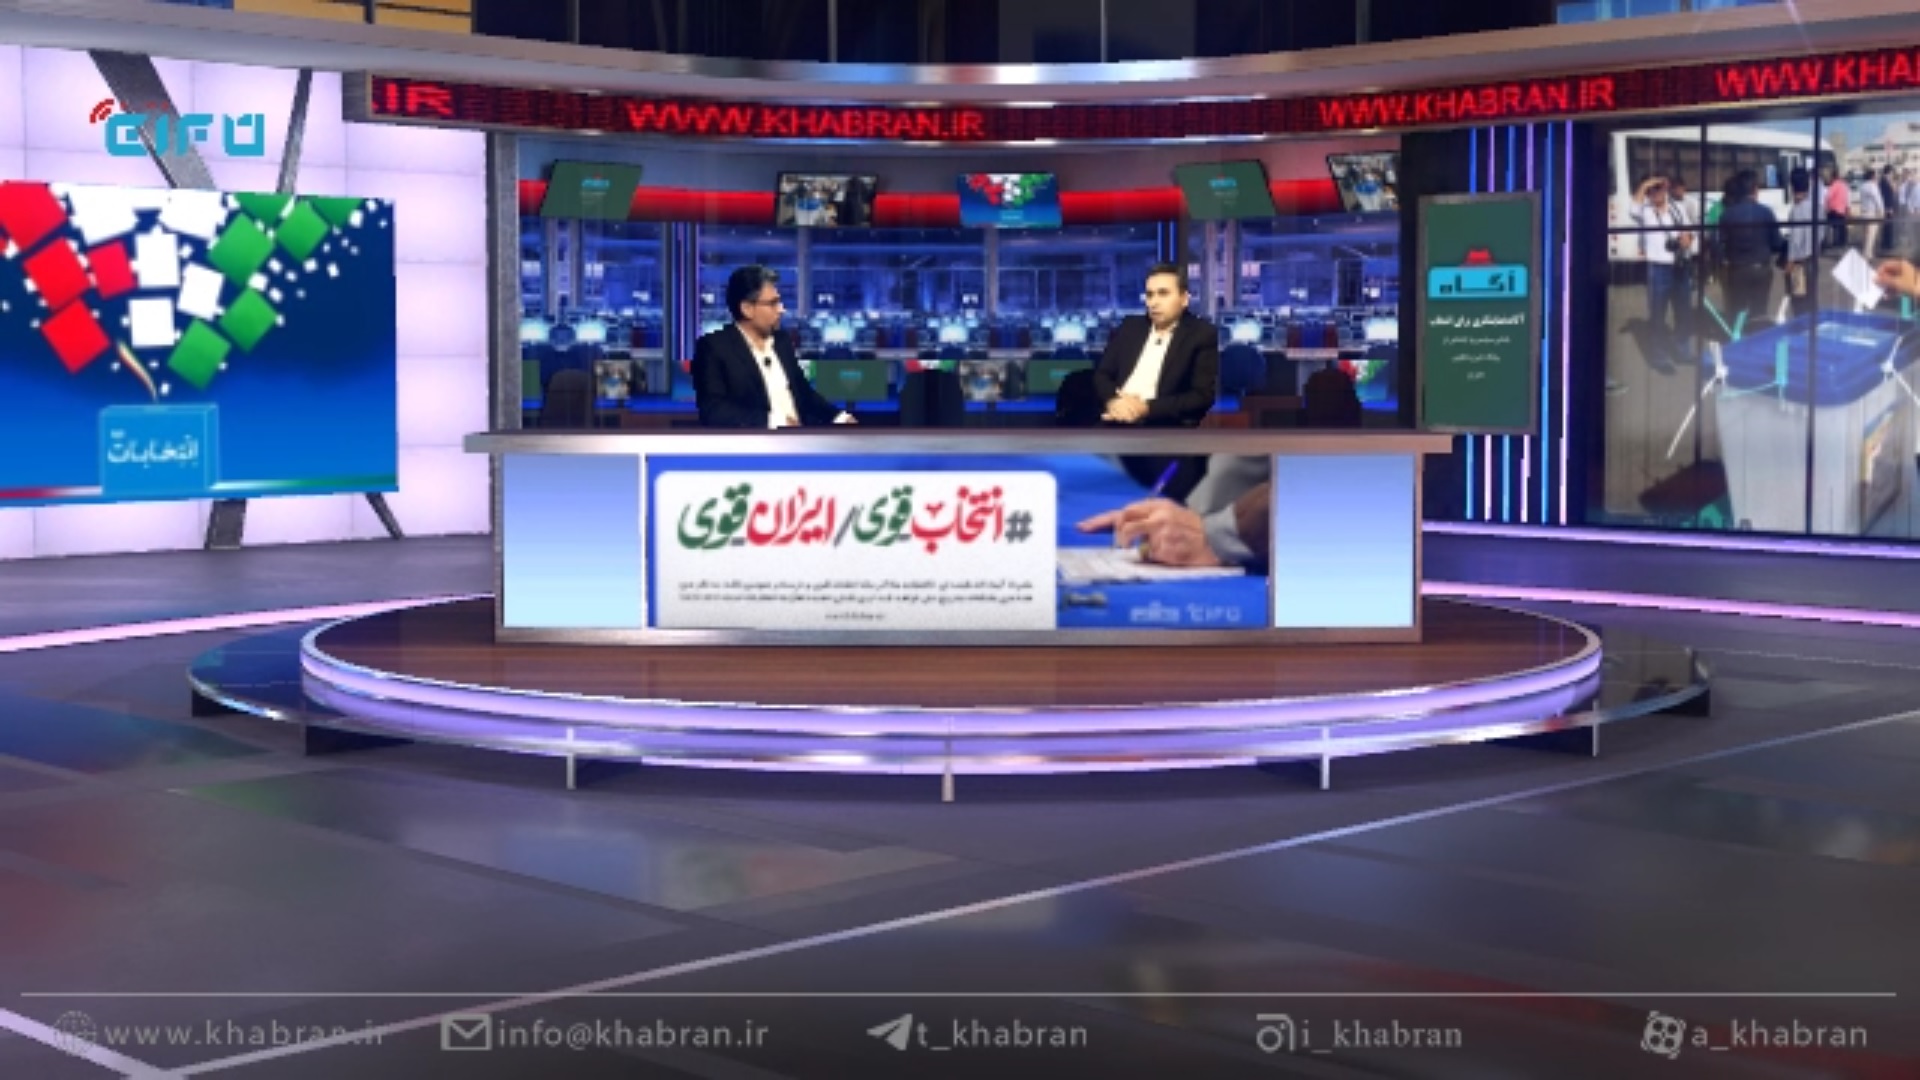 آگاه | قسمت ششم: گفتگو با حسن عموری، کاندیدای ششمین دوره انتخابات شورای اسلامی رامشیر